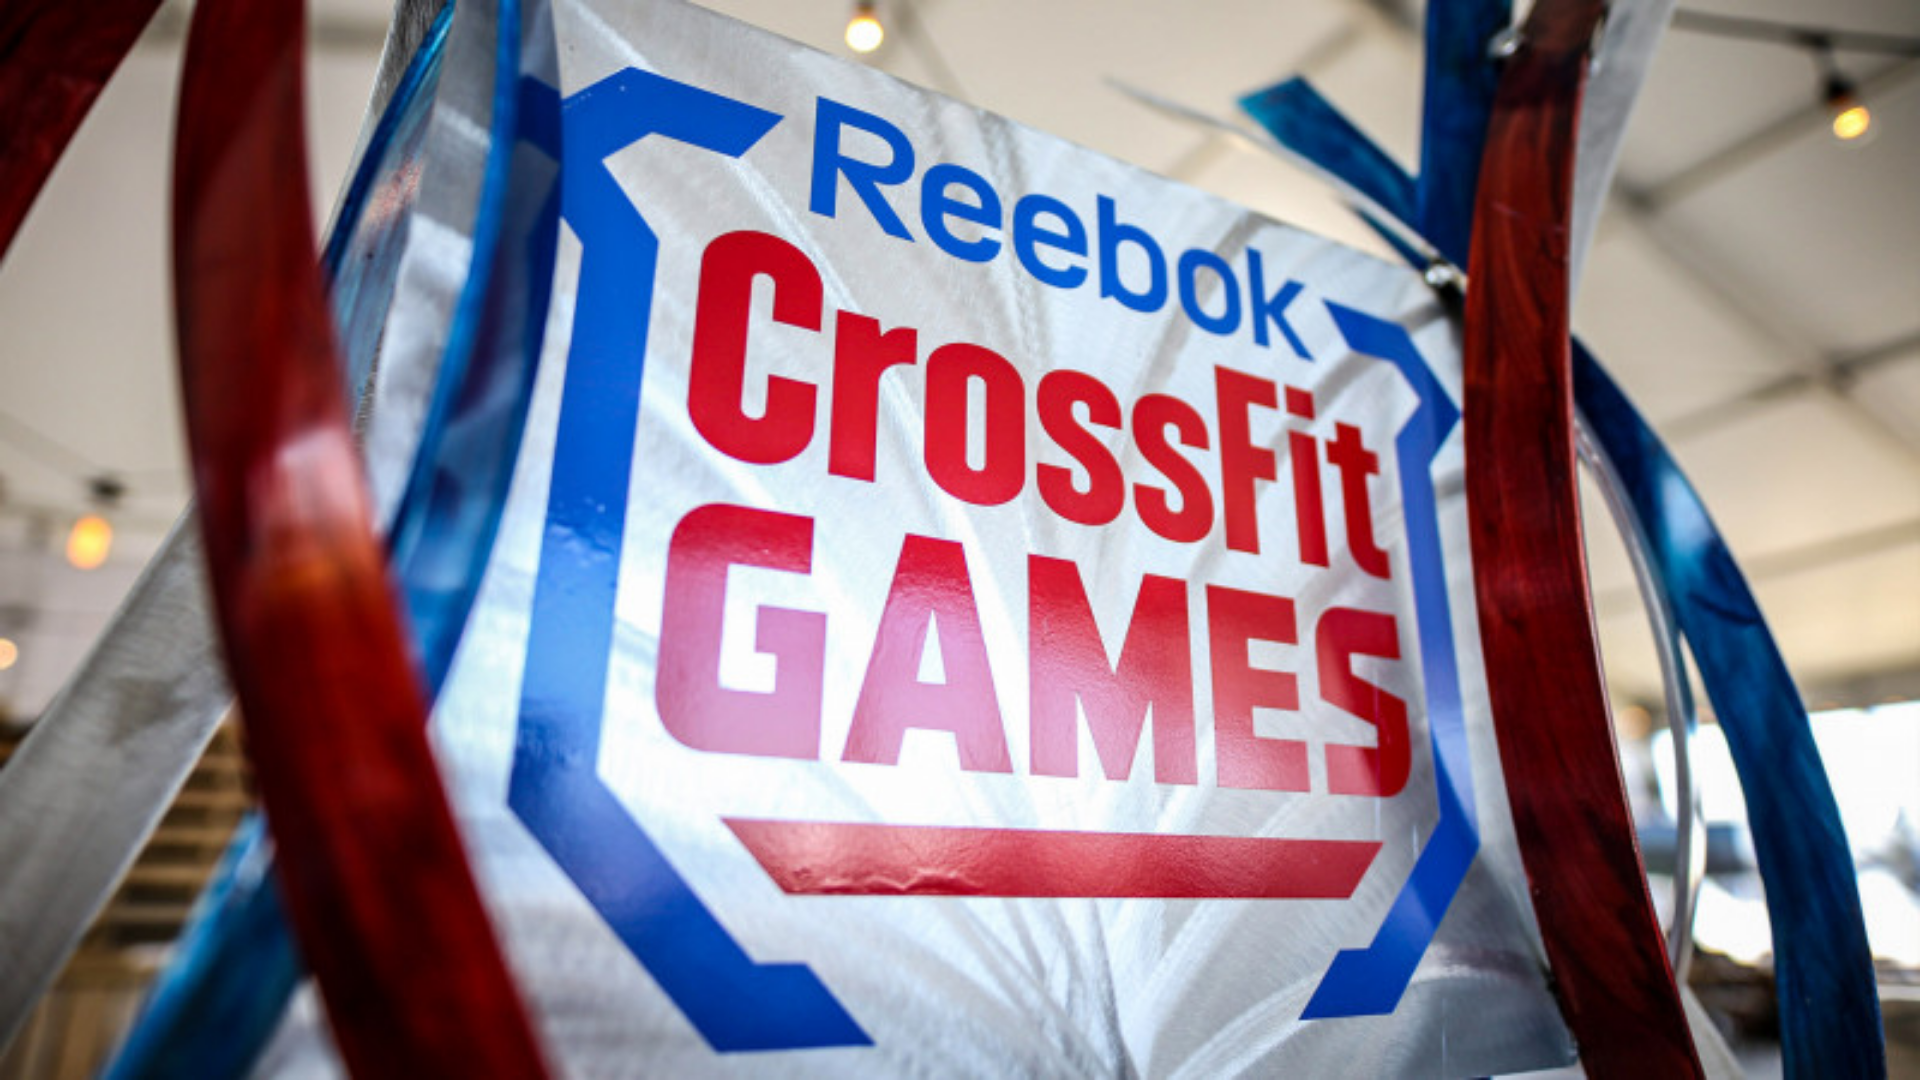 CrossFit tarihi açısından sponsor ortağı reebok temalı bir görsel.